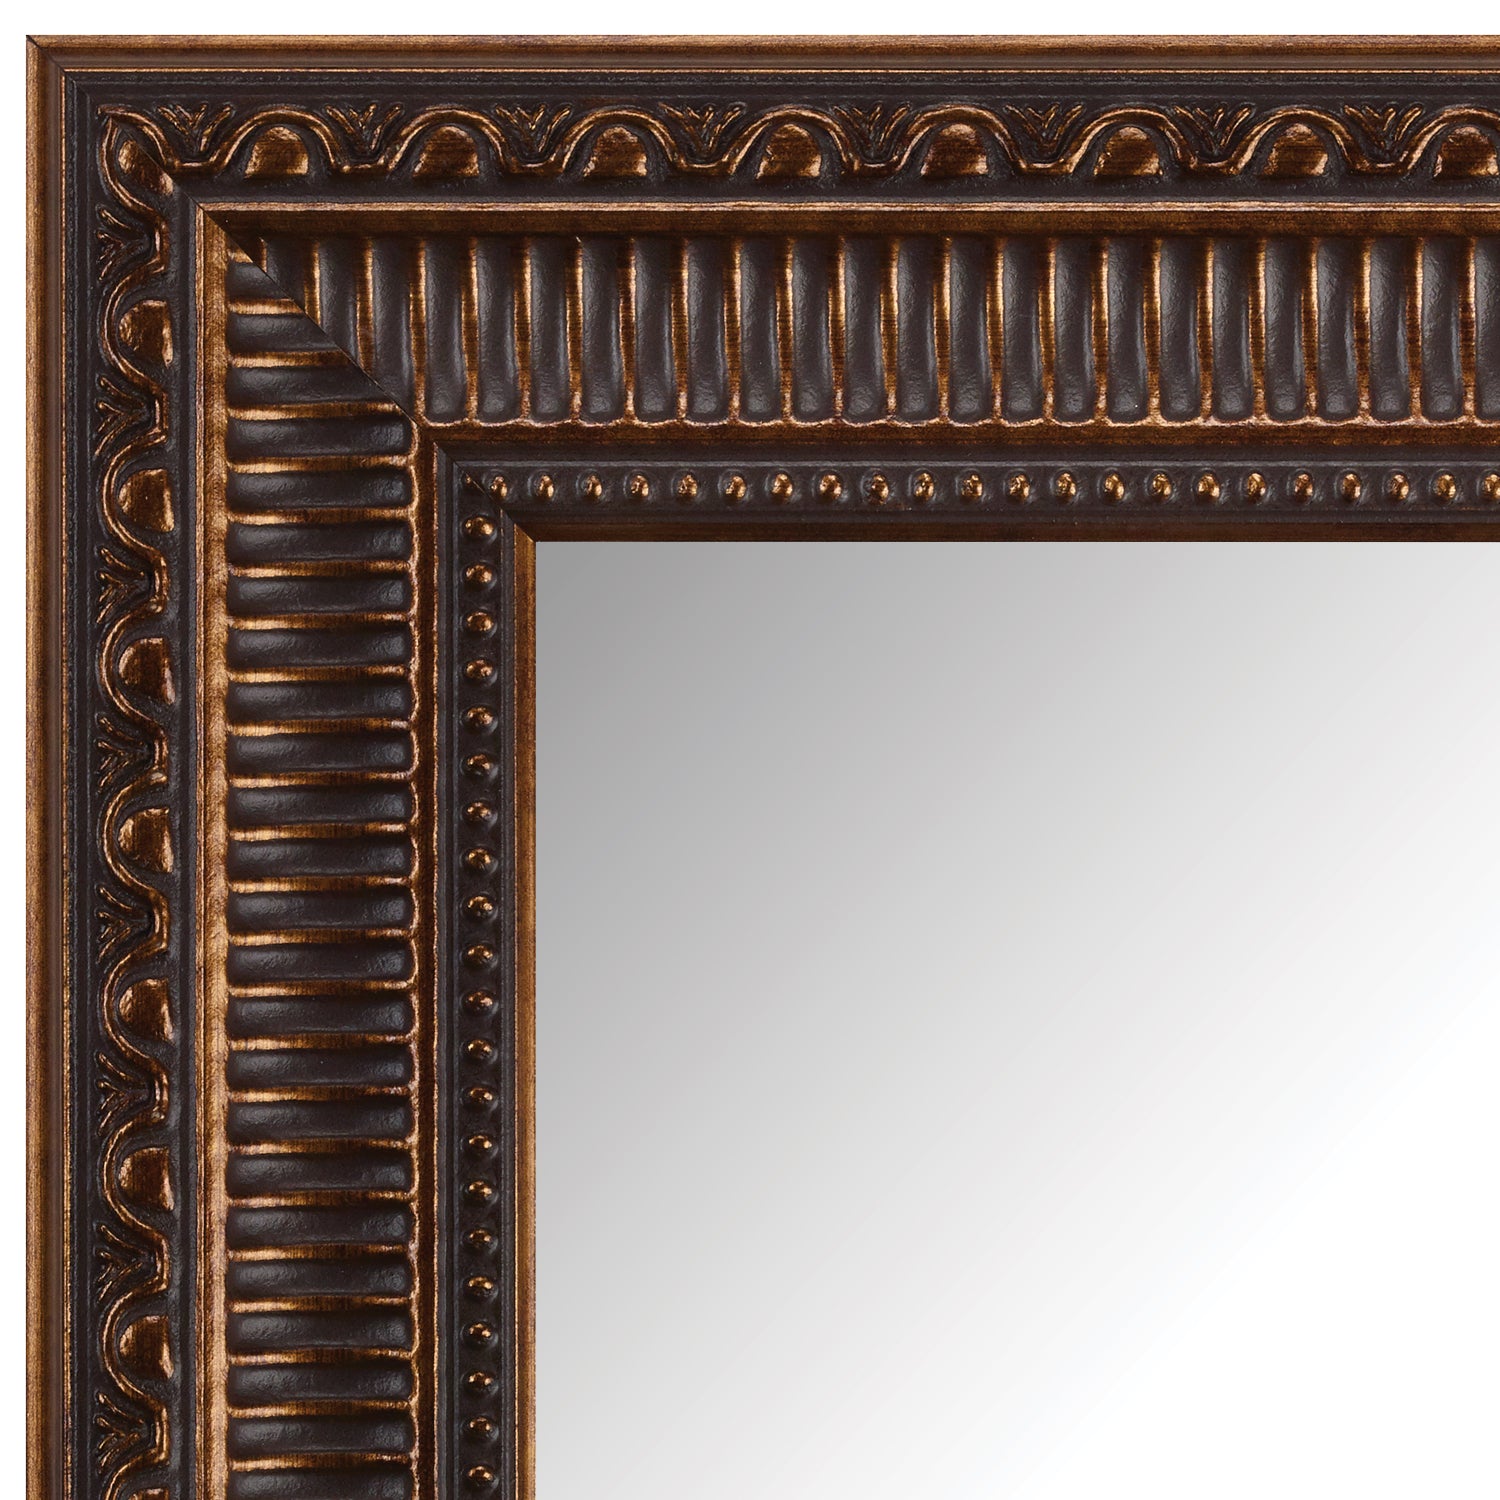 eksil strejke Hændelse Oil Rubbed Bronze Mirror Frame | Frames for Mirrors on Walls – MirrorMate